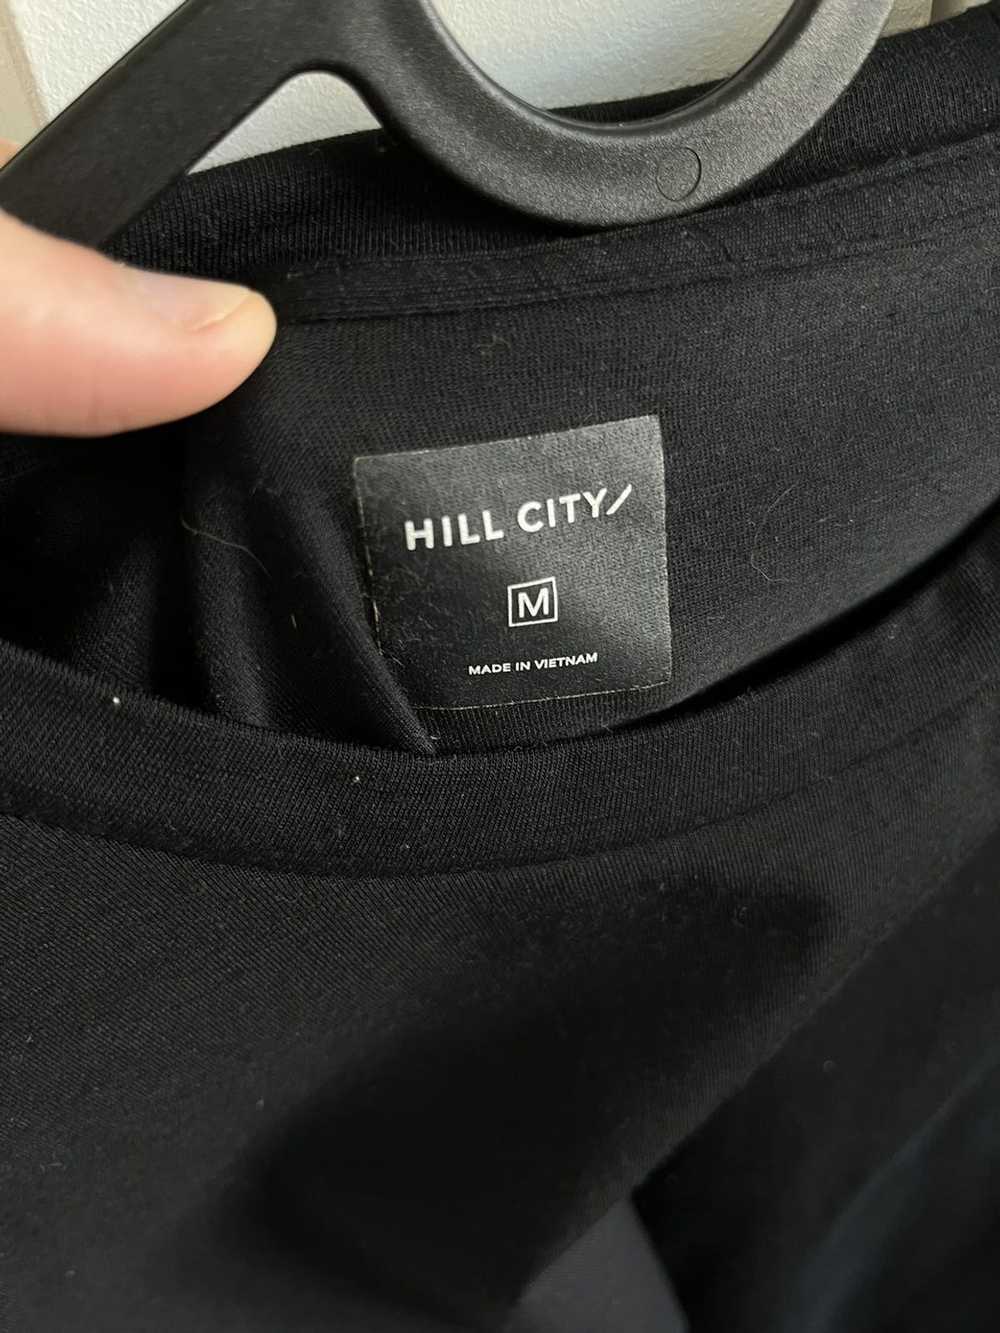 Gap Hill City Merino Wool Shirt - image 2